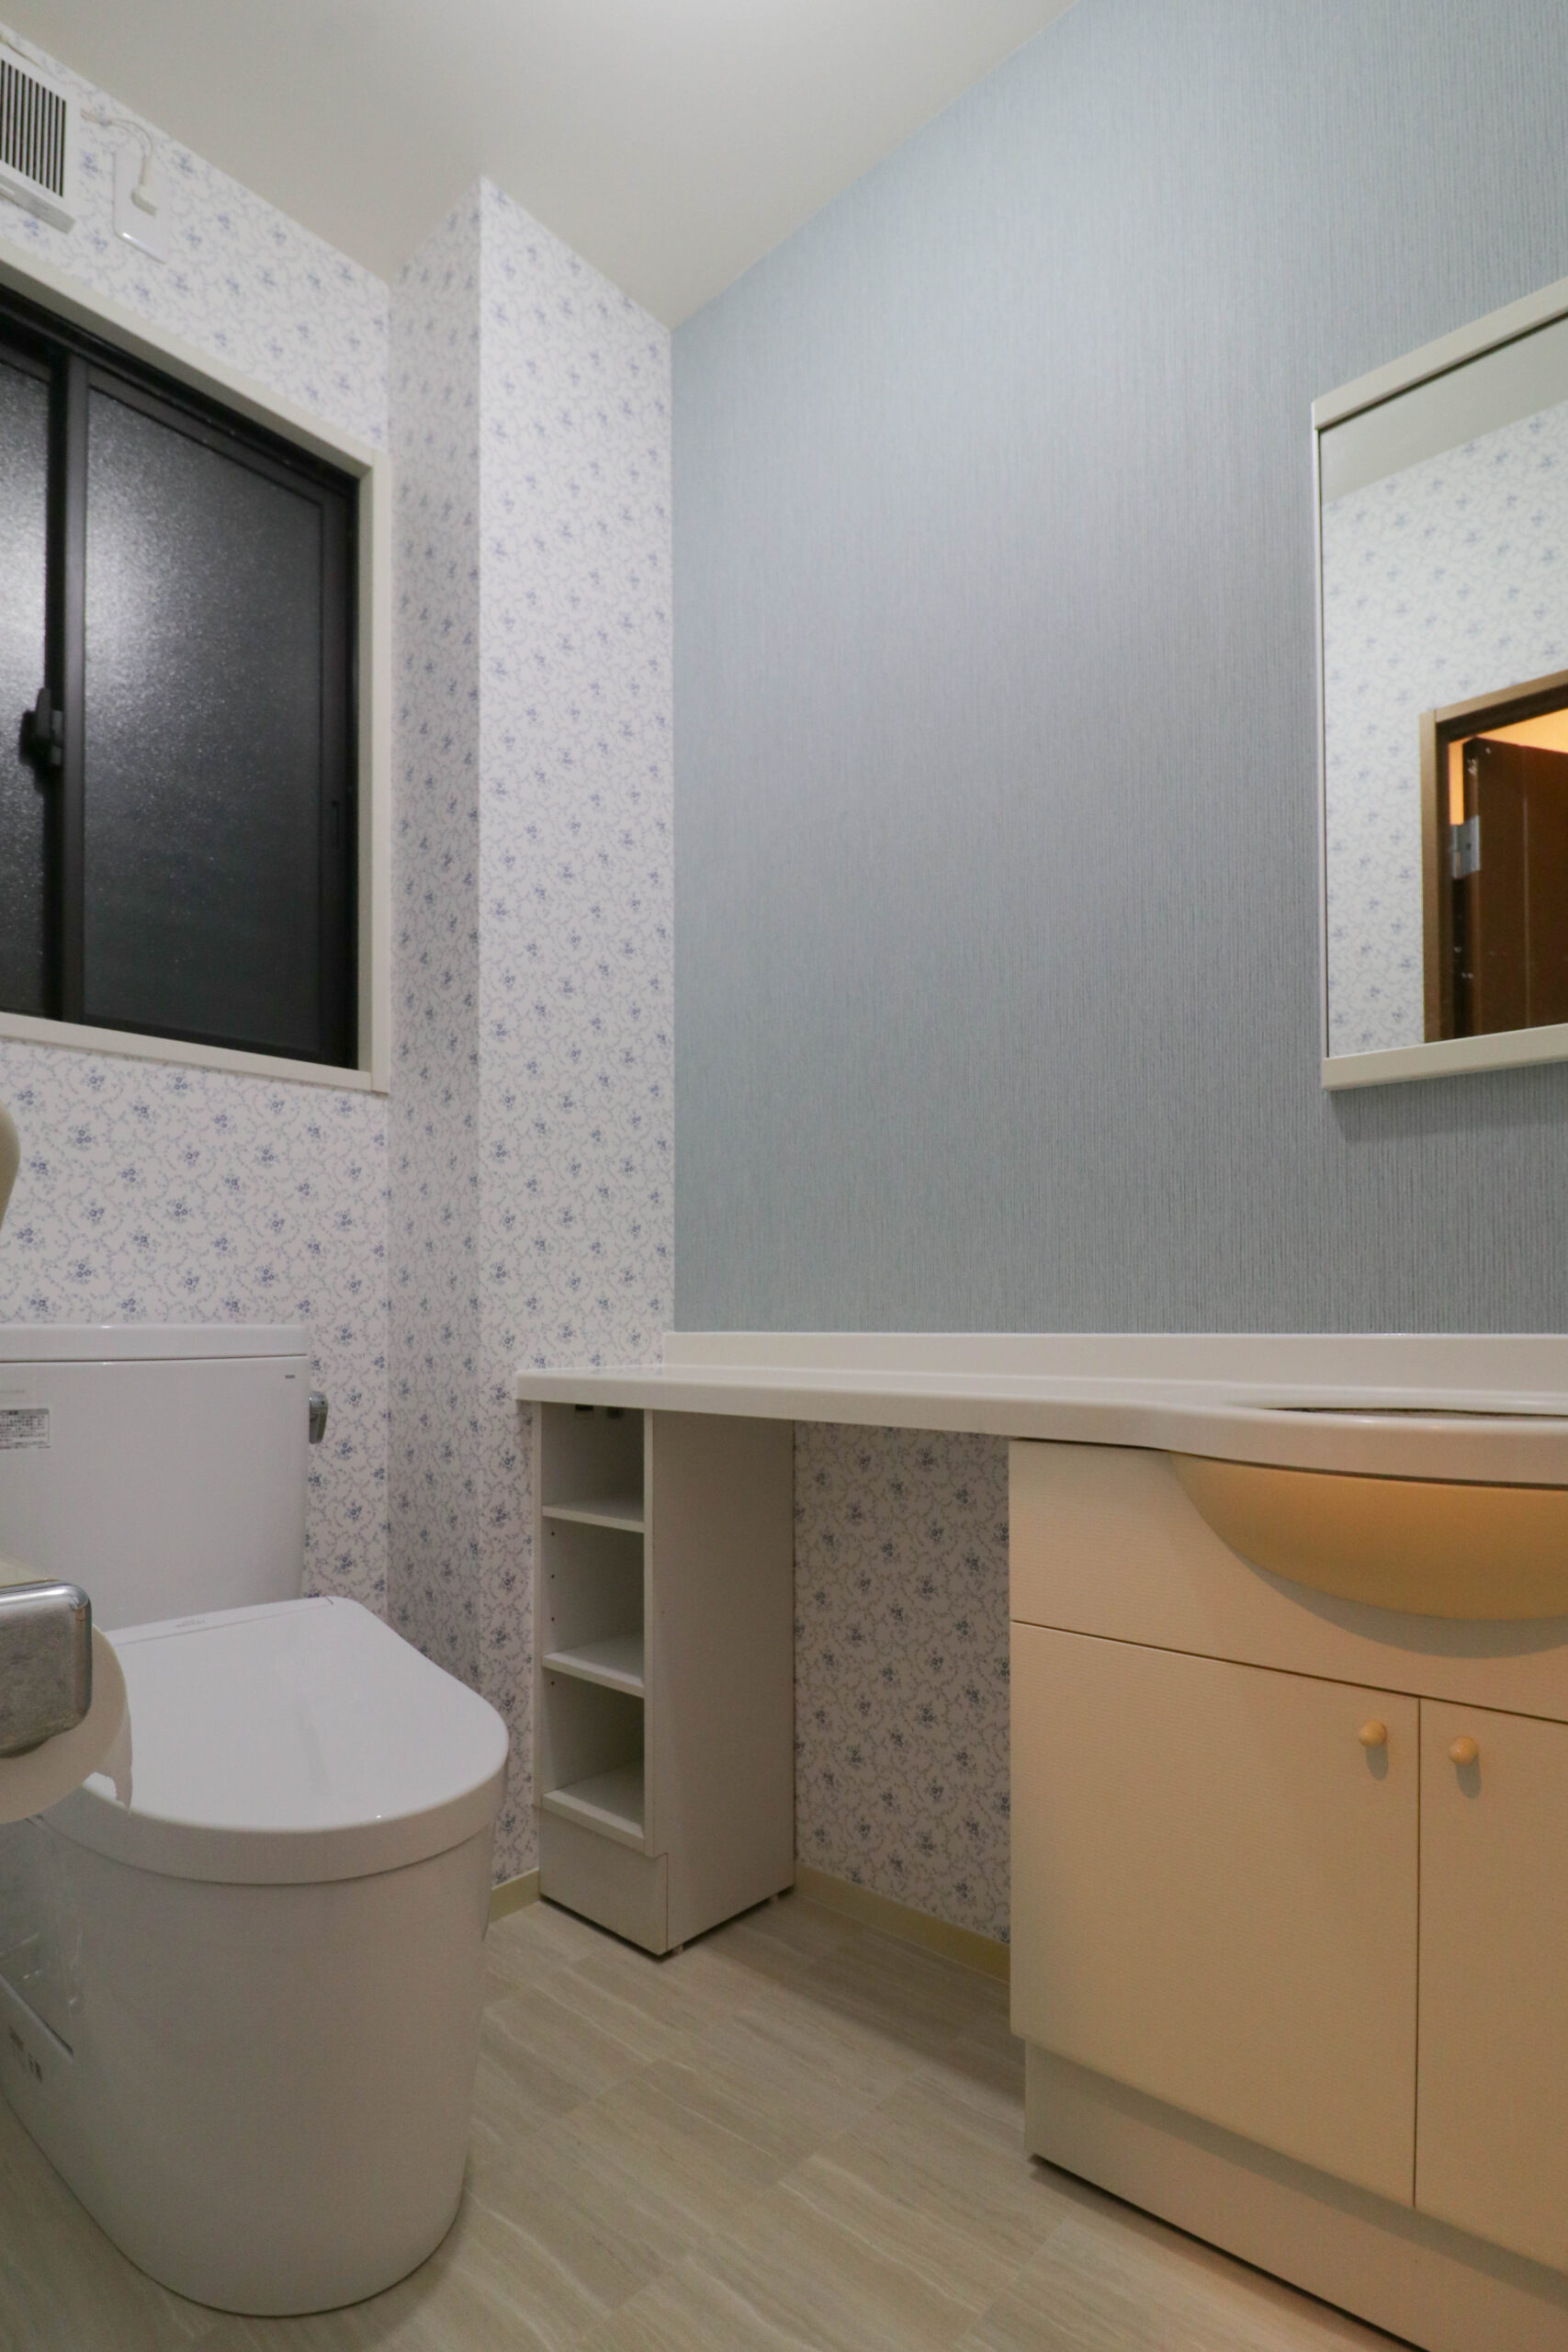 佐賀市大和町 A様 キッチン・トイレ改修工事『お掃除のしやすさにこだわった空間』